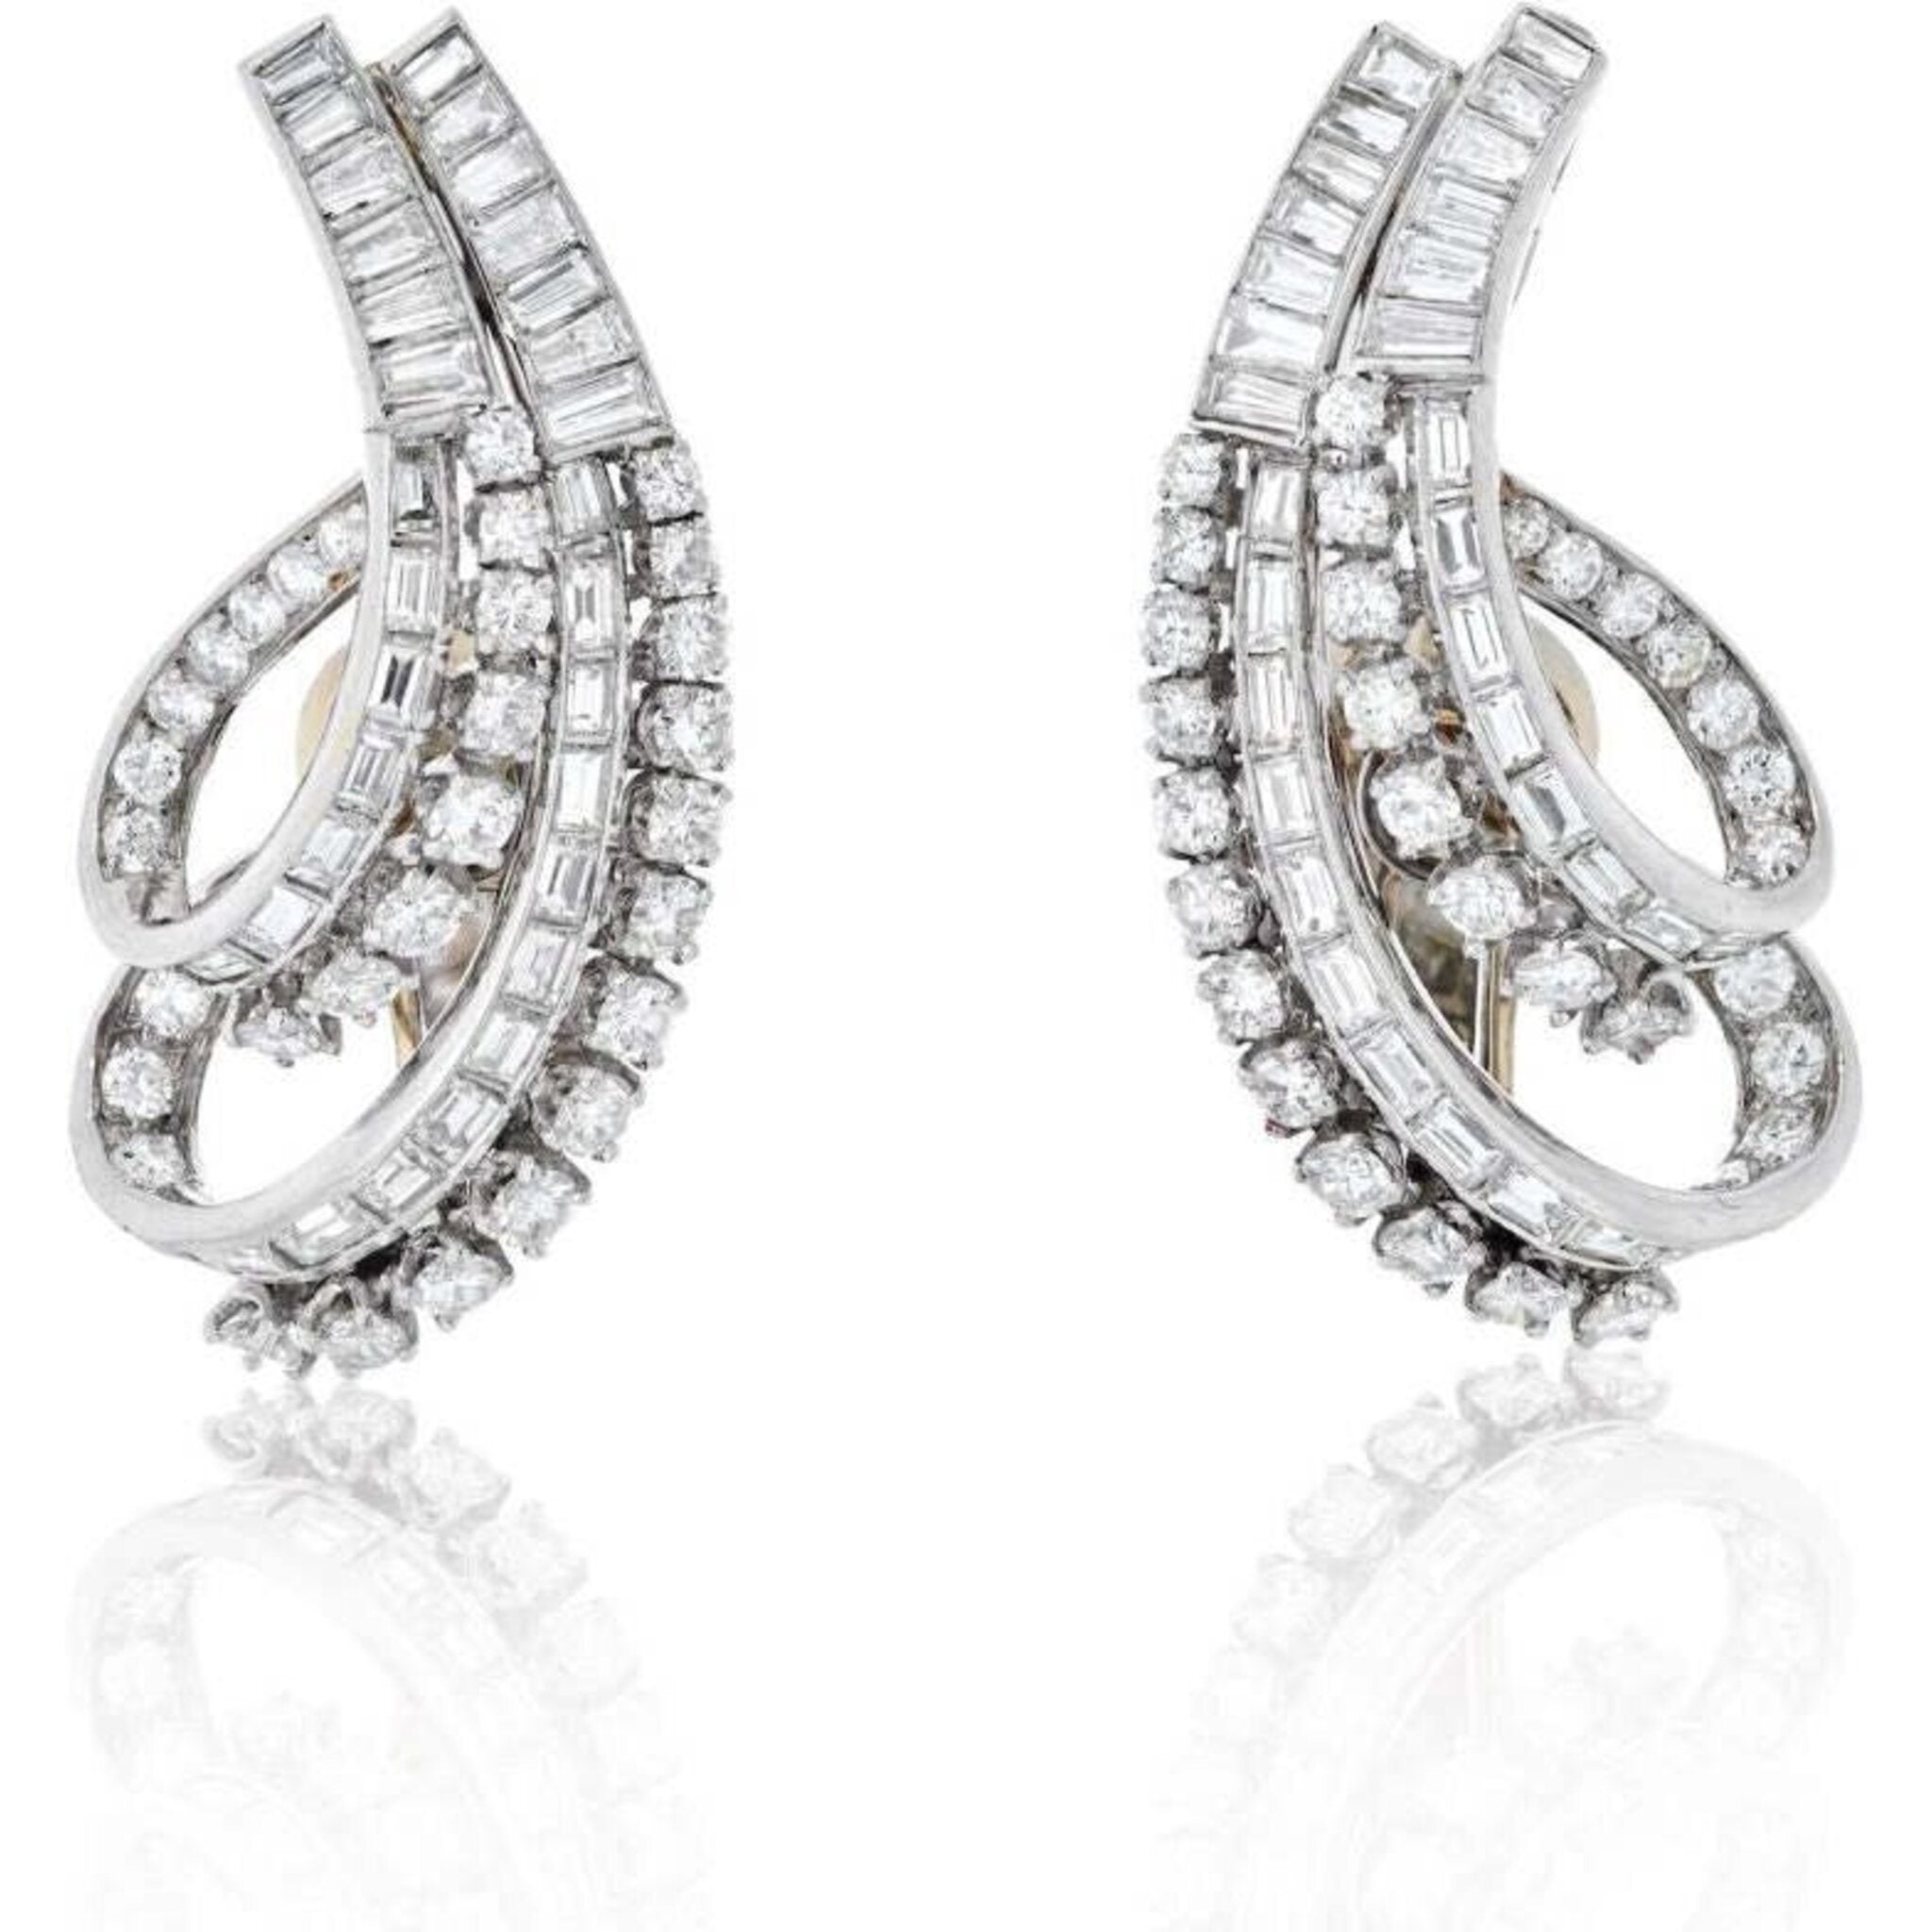 Buy Platinum Earrings Online | ORRA